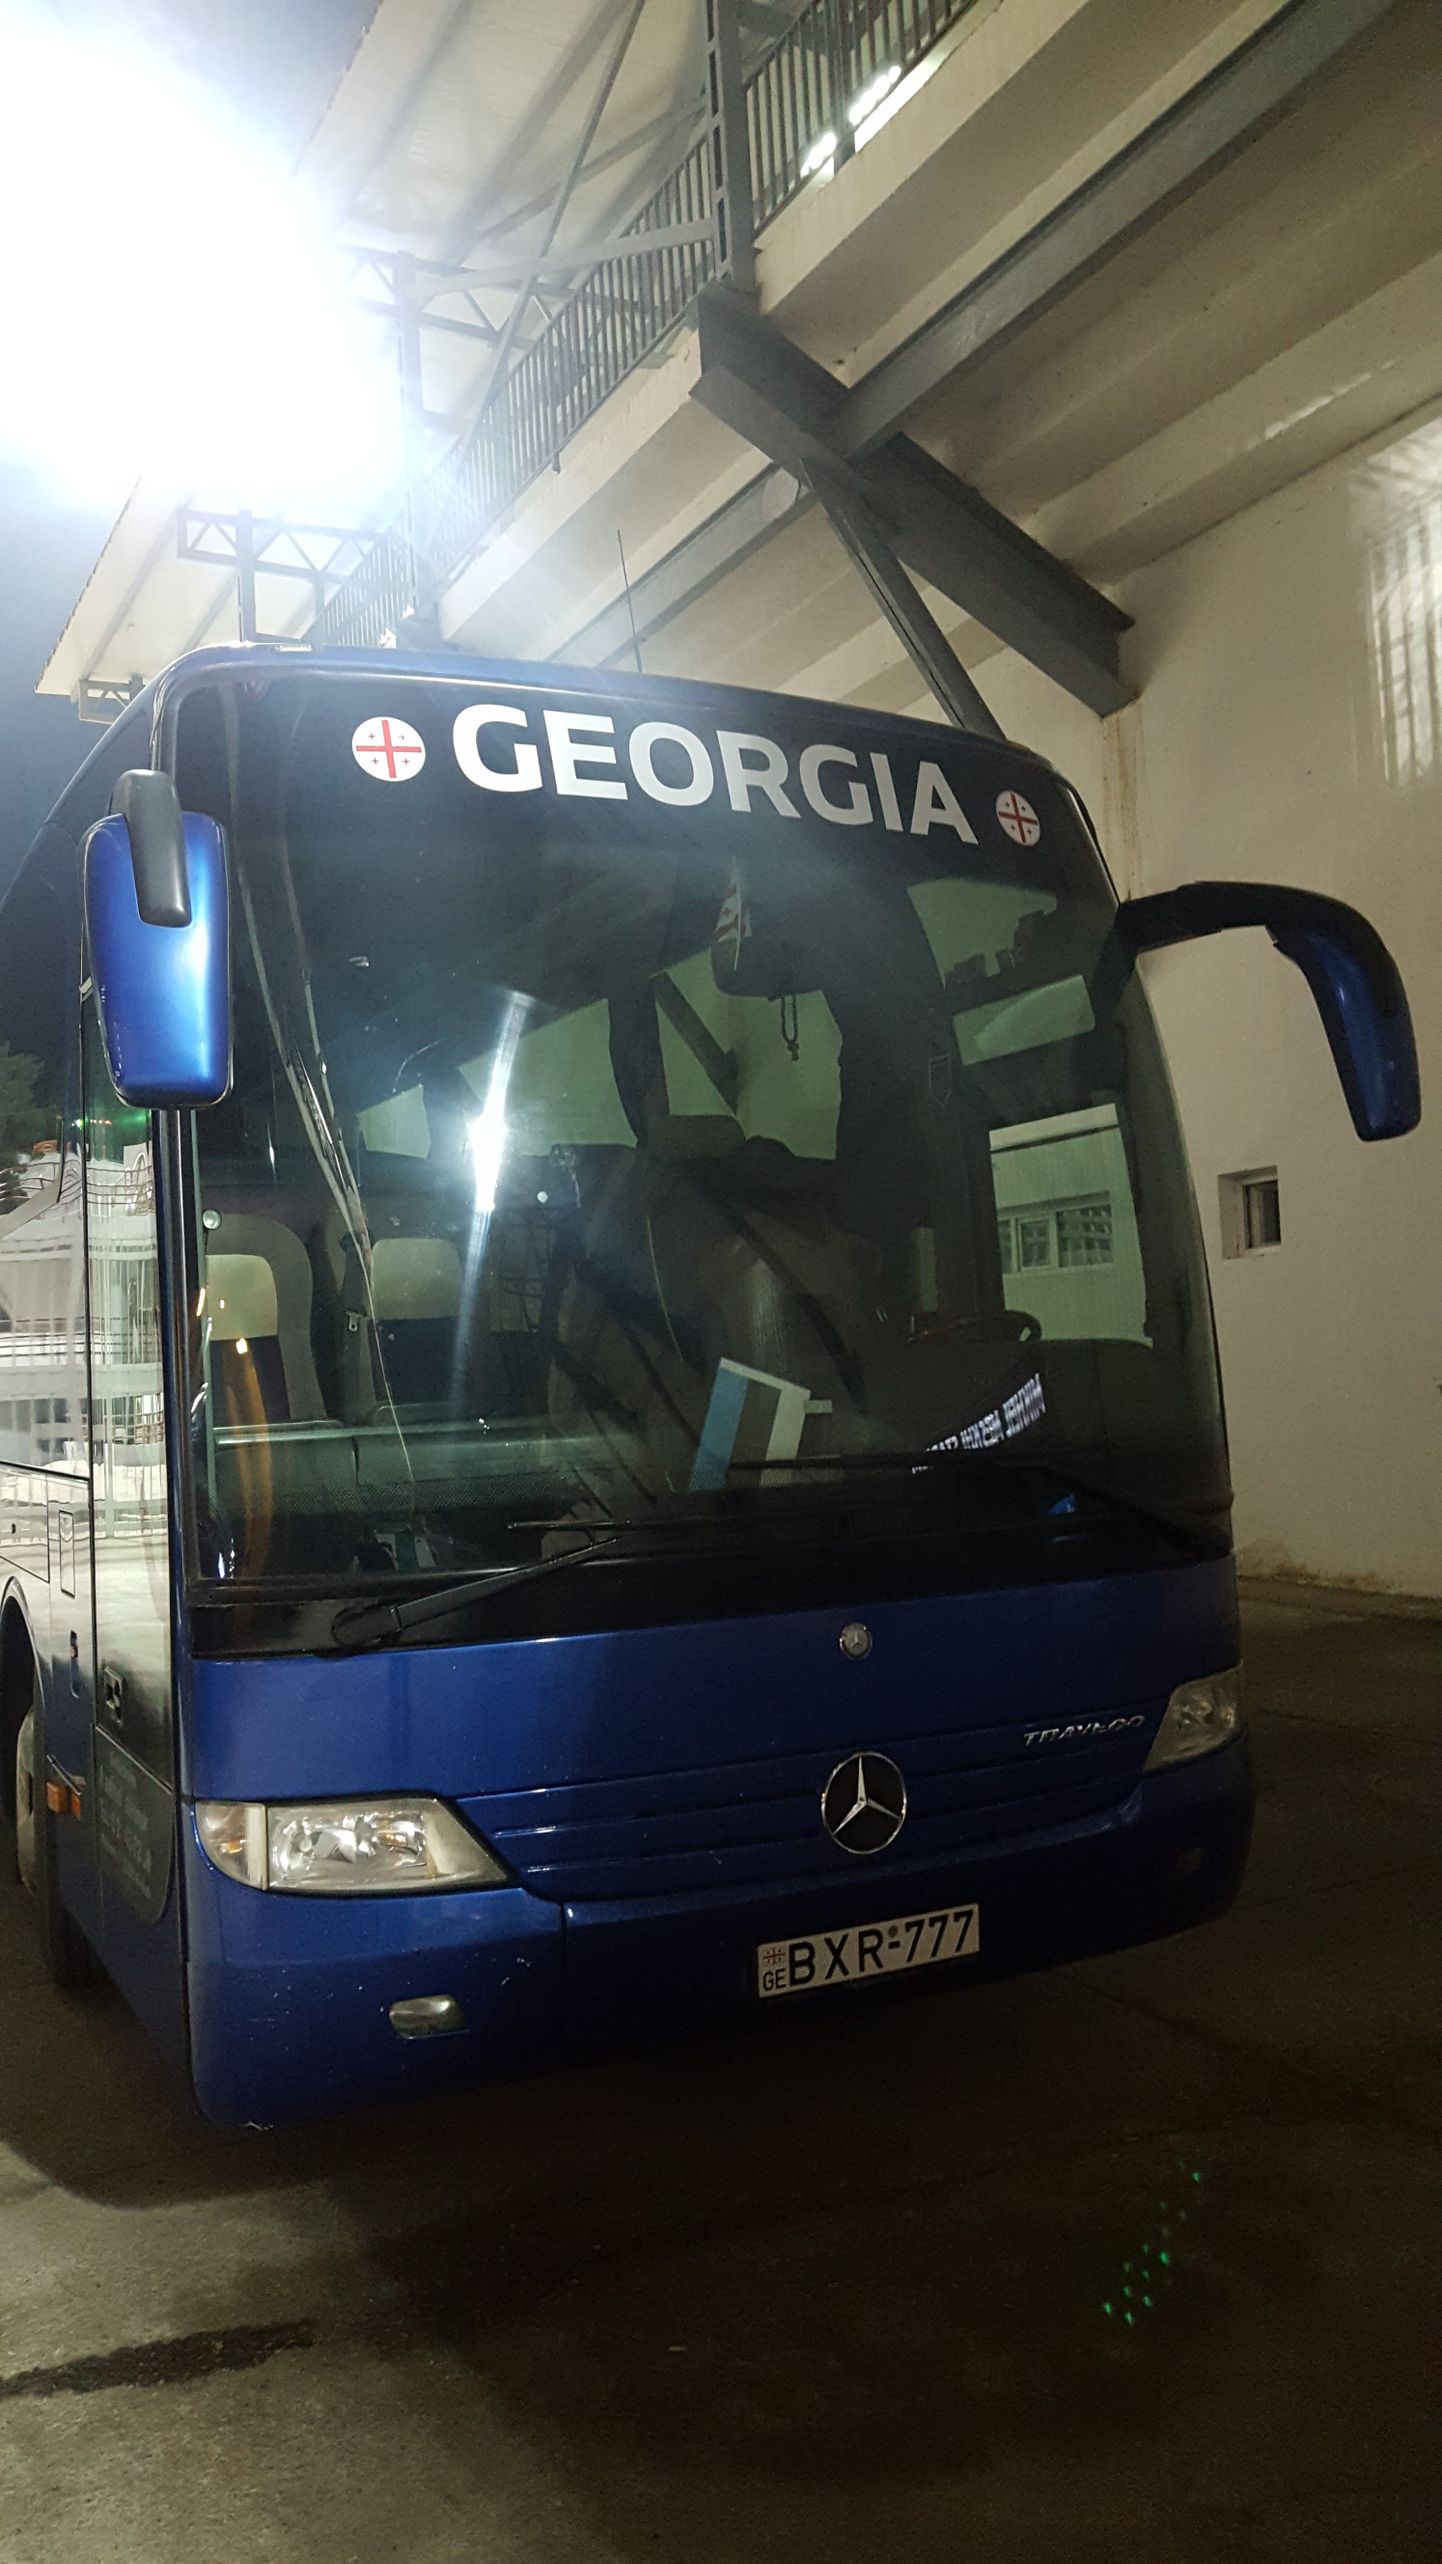 Gruusia koondis laenas eestlastele lahkelt oma õnnenumbriga bussi.